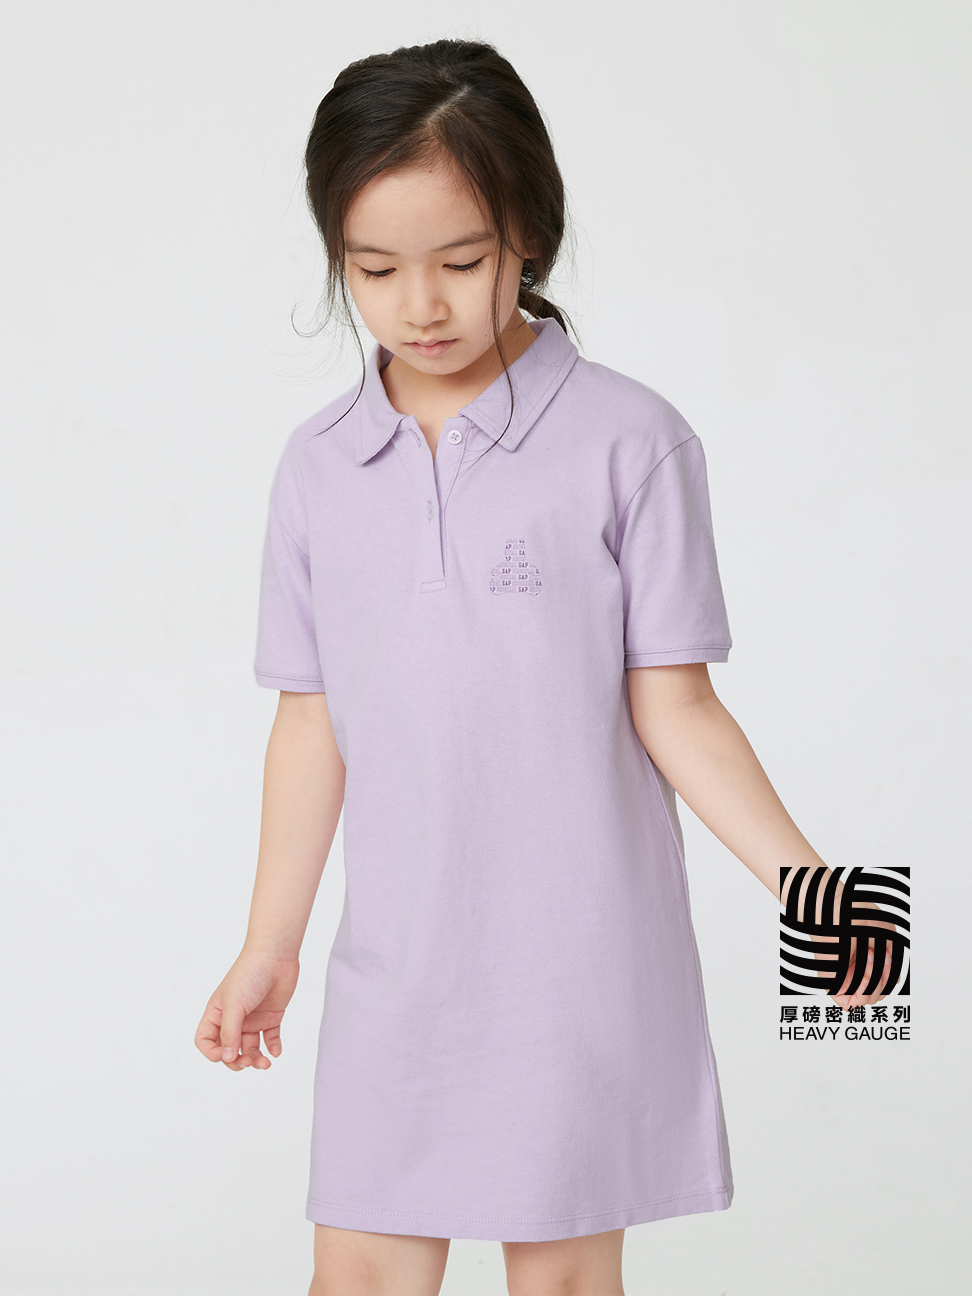 女童裝|Logo小熊短袖洋裝-淺紫色